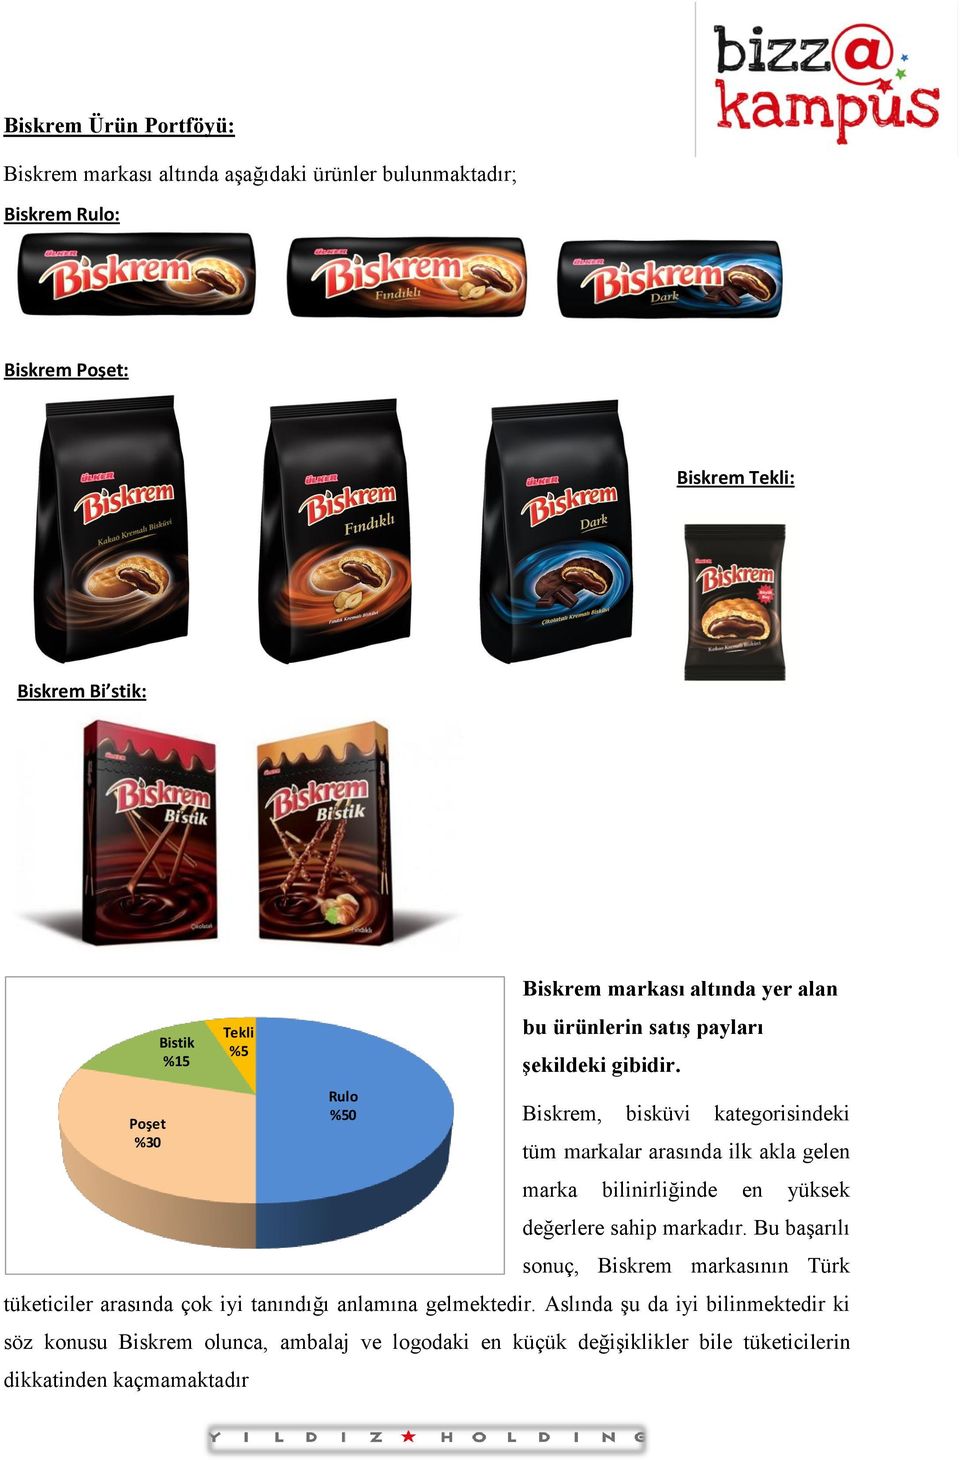 Biskrem, bisküvi kategorisindeki tüm markalar arasında ilk akla gelen marka bilinirliğinde en yüksek değerlere sahip markadır.